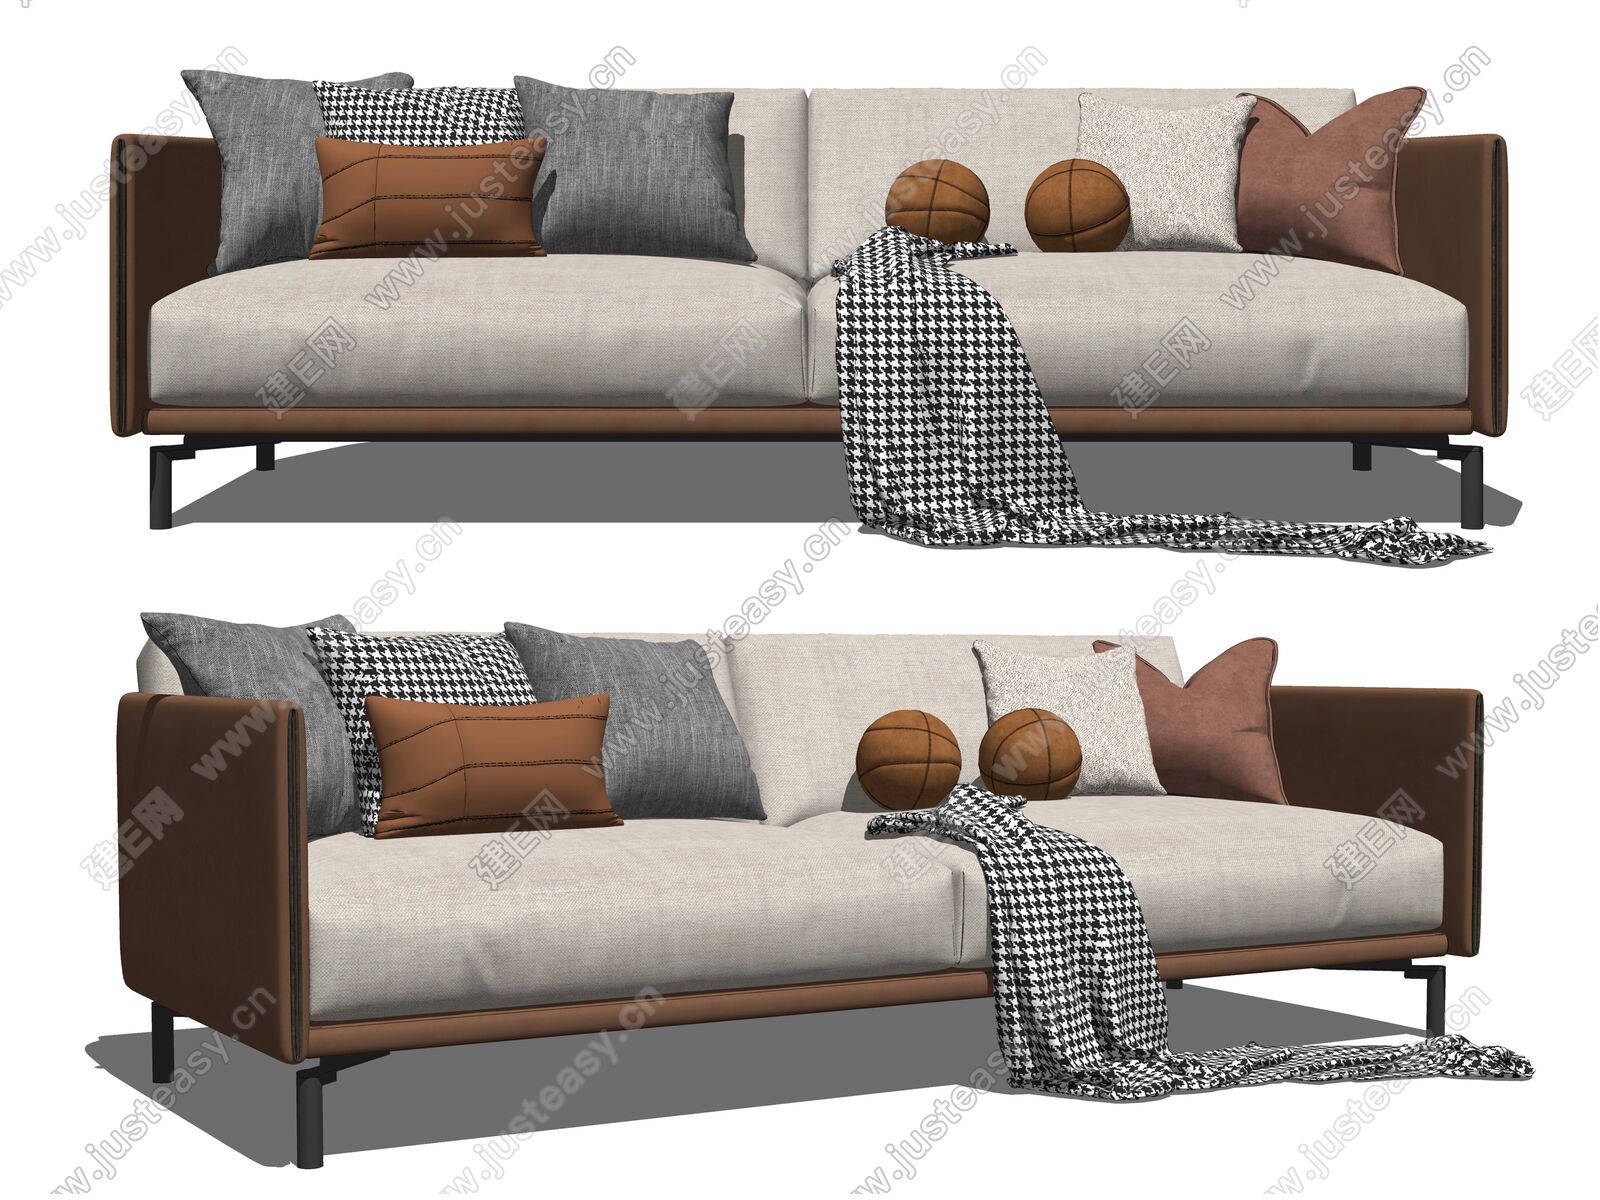 MonsenHome 现代棉麻客厅双人沙发_设计素材库免费下载-美间设计